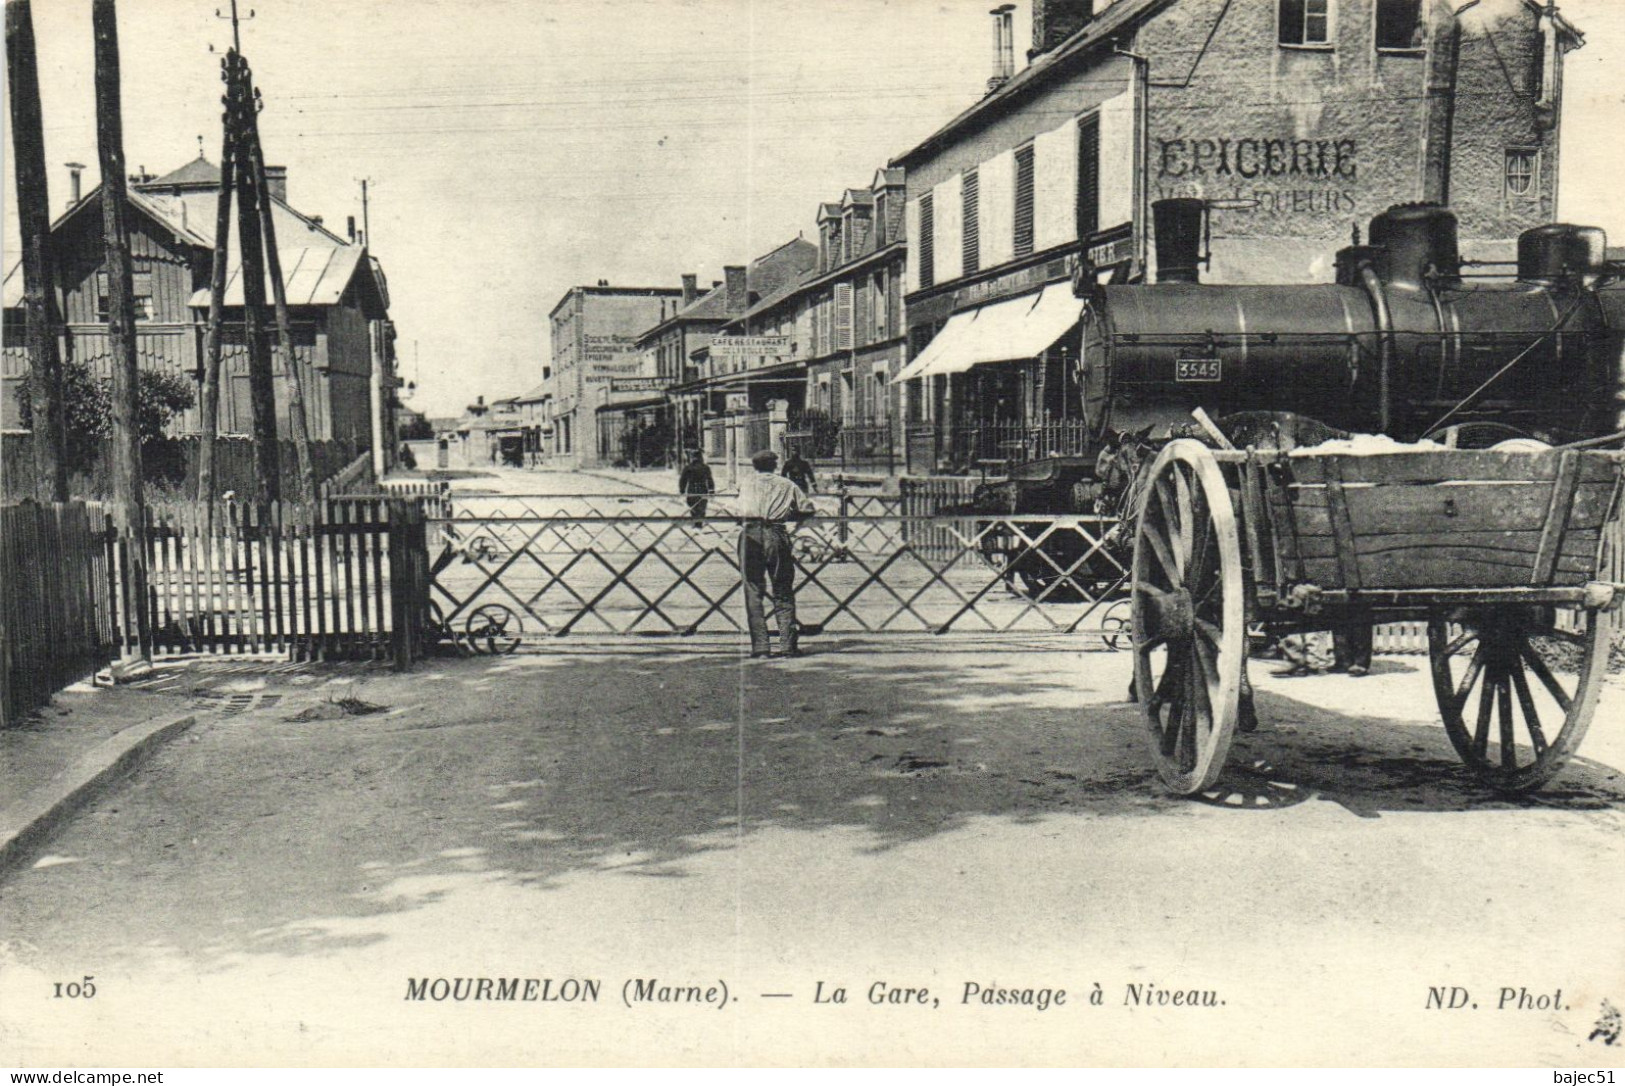 Mourmelon - La Gare, Passage à Niveau "épicerie" - Mourmelon Le Grand